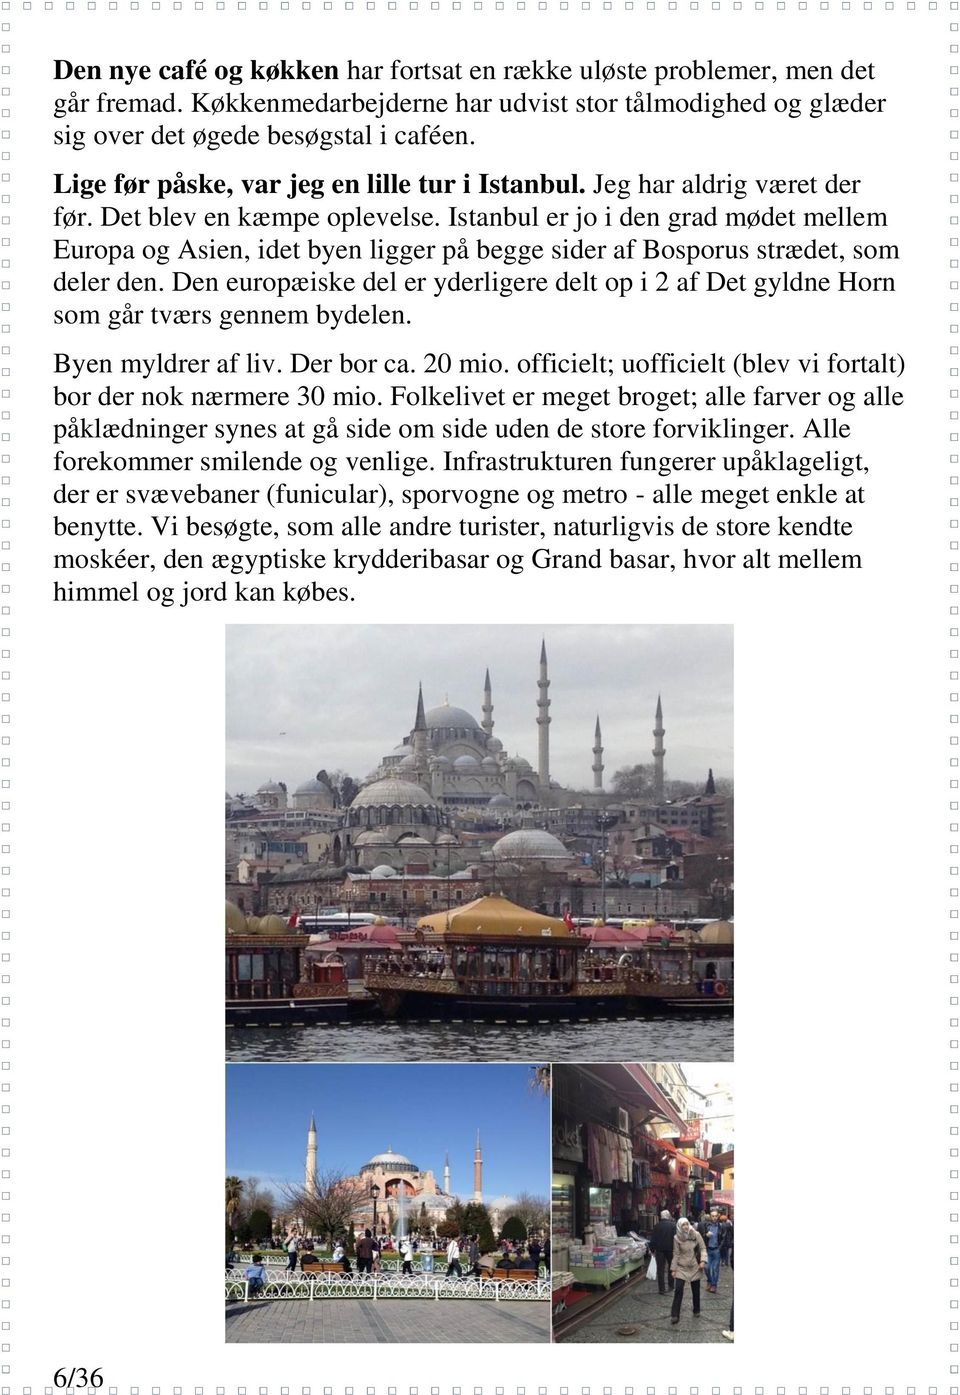 Istanbul er jo i den grad mødet mellem Europa og Asien, idet byen ligger på begge sider af Bosporus strædet, som deler den.